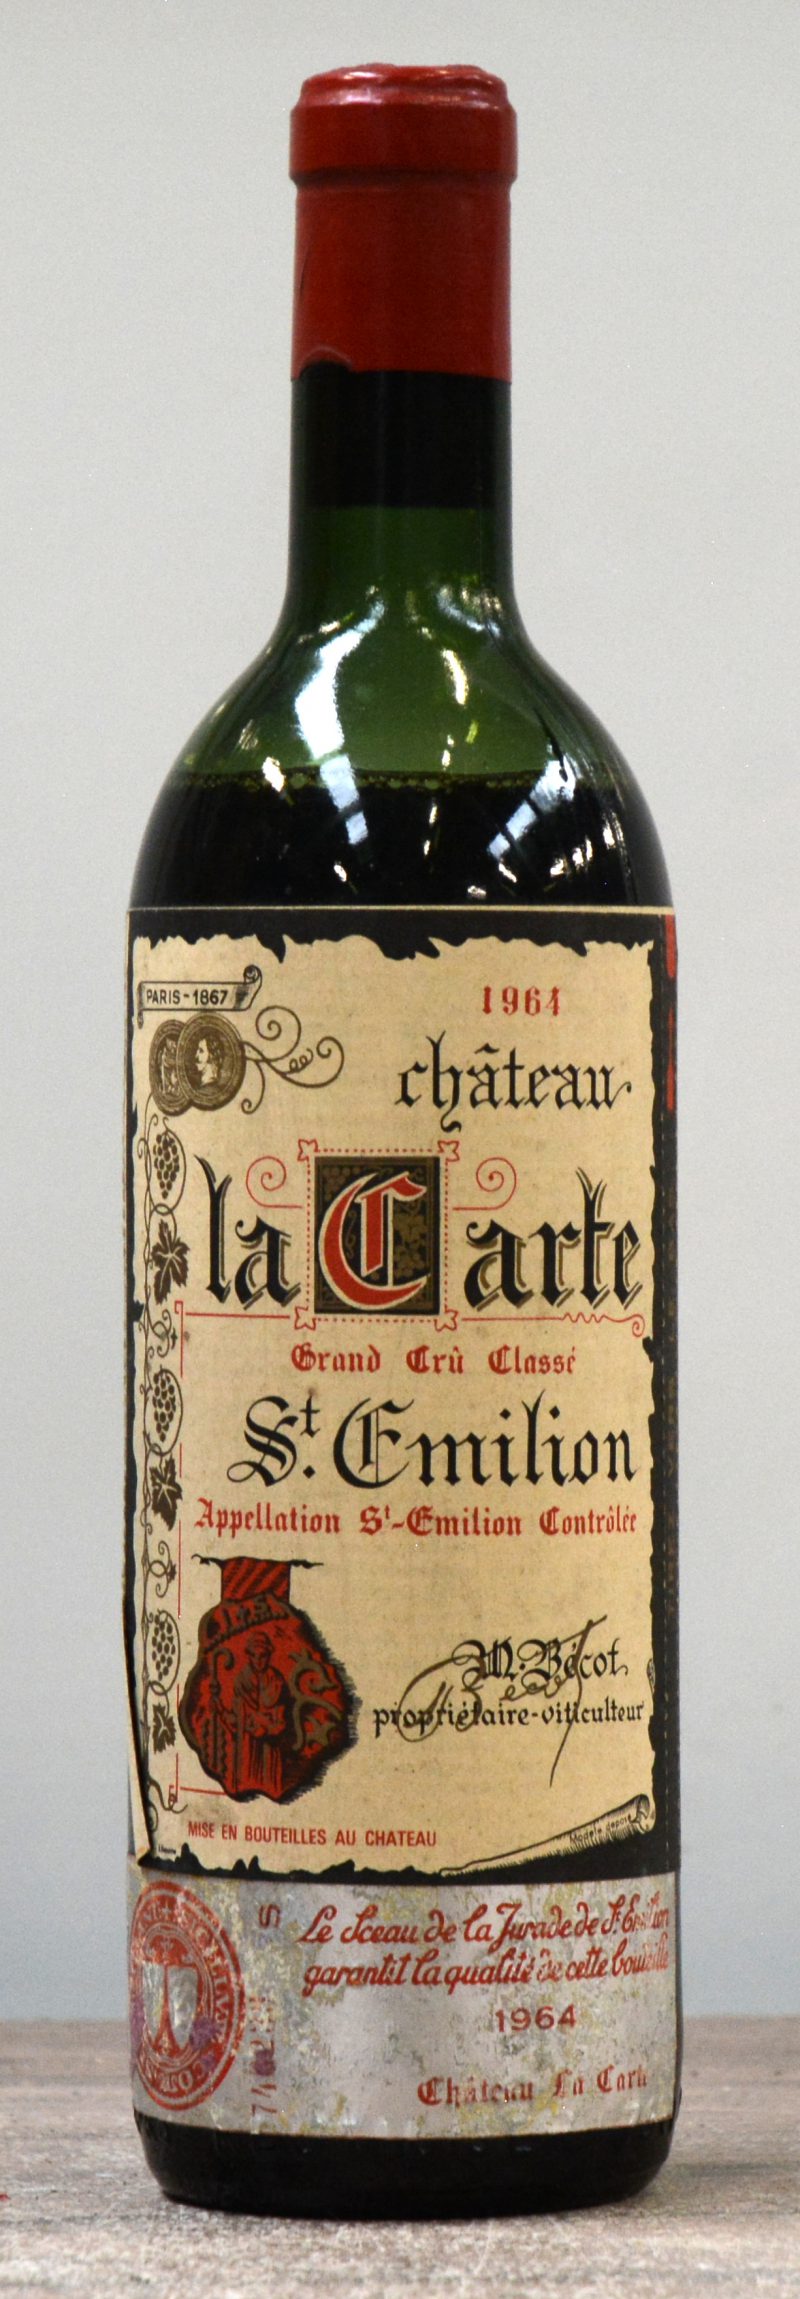 Ch. La Carte A.C. Saint-Emilion Grand cru classé  M.C.  1964  aantal: 1 BT.